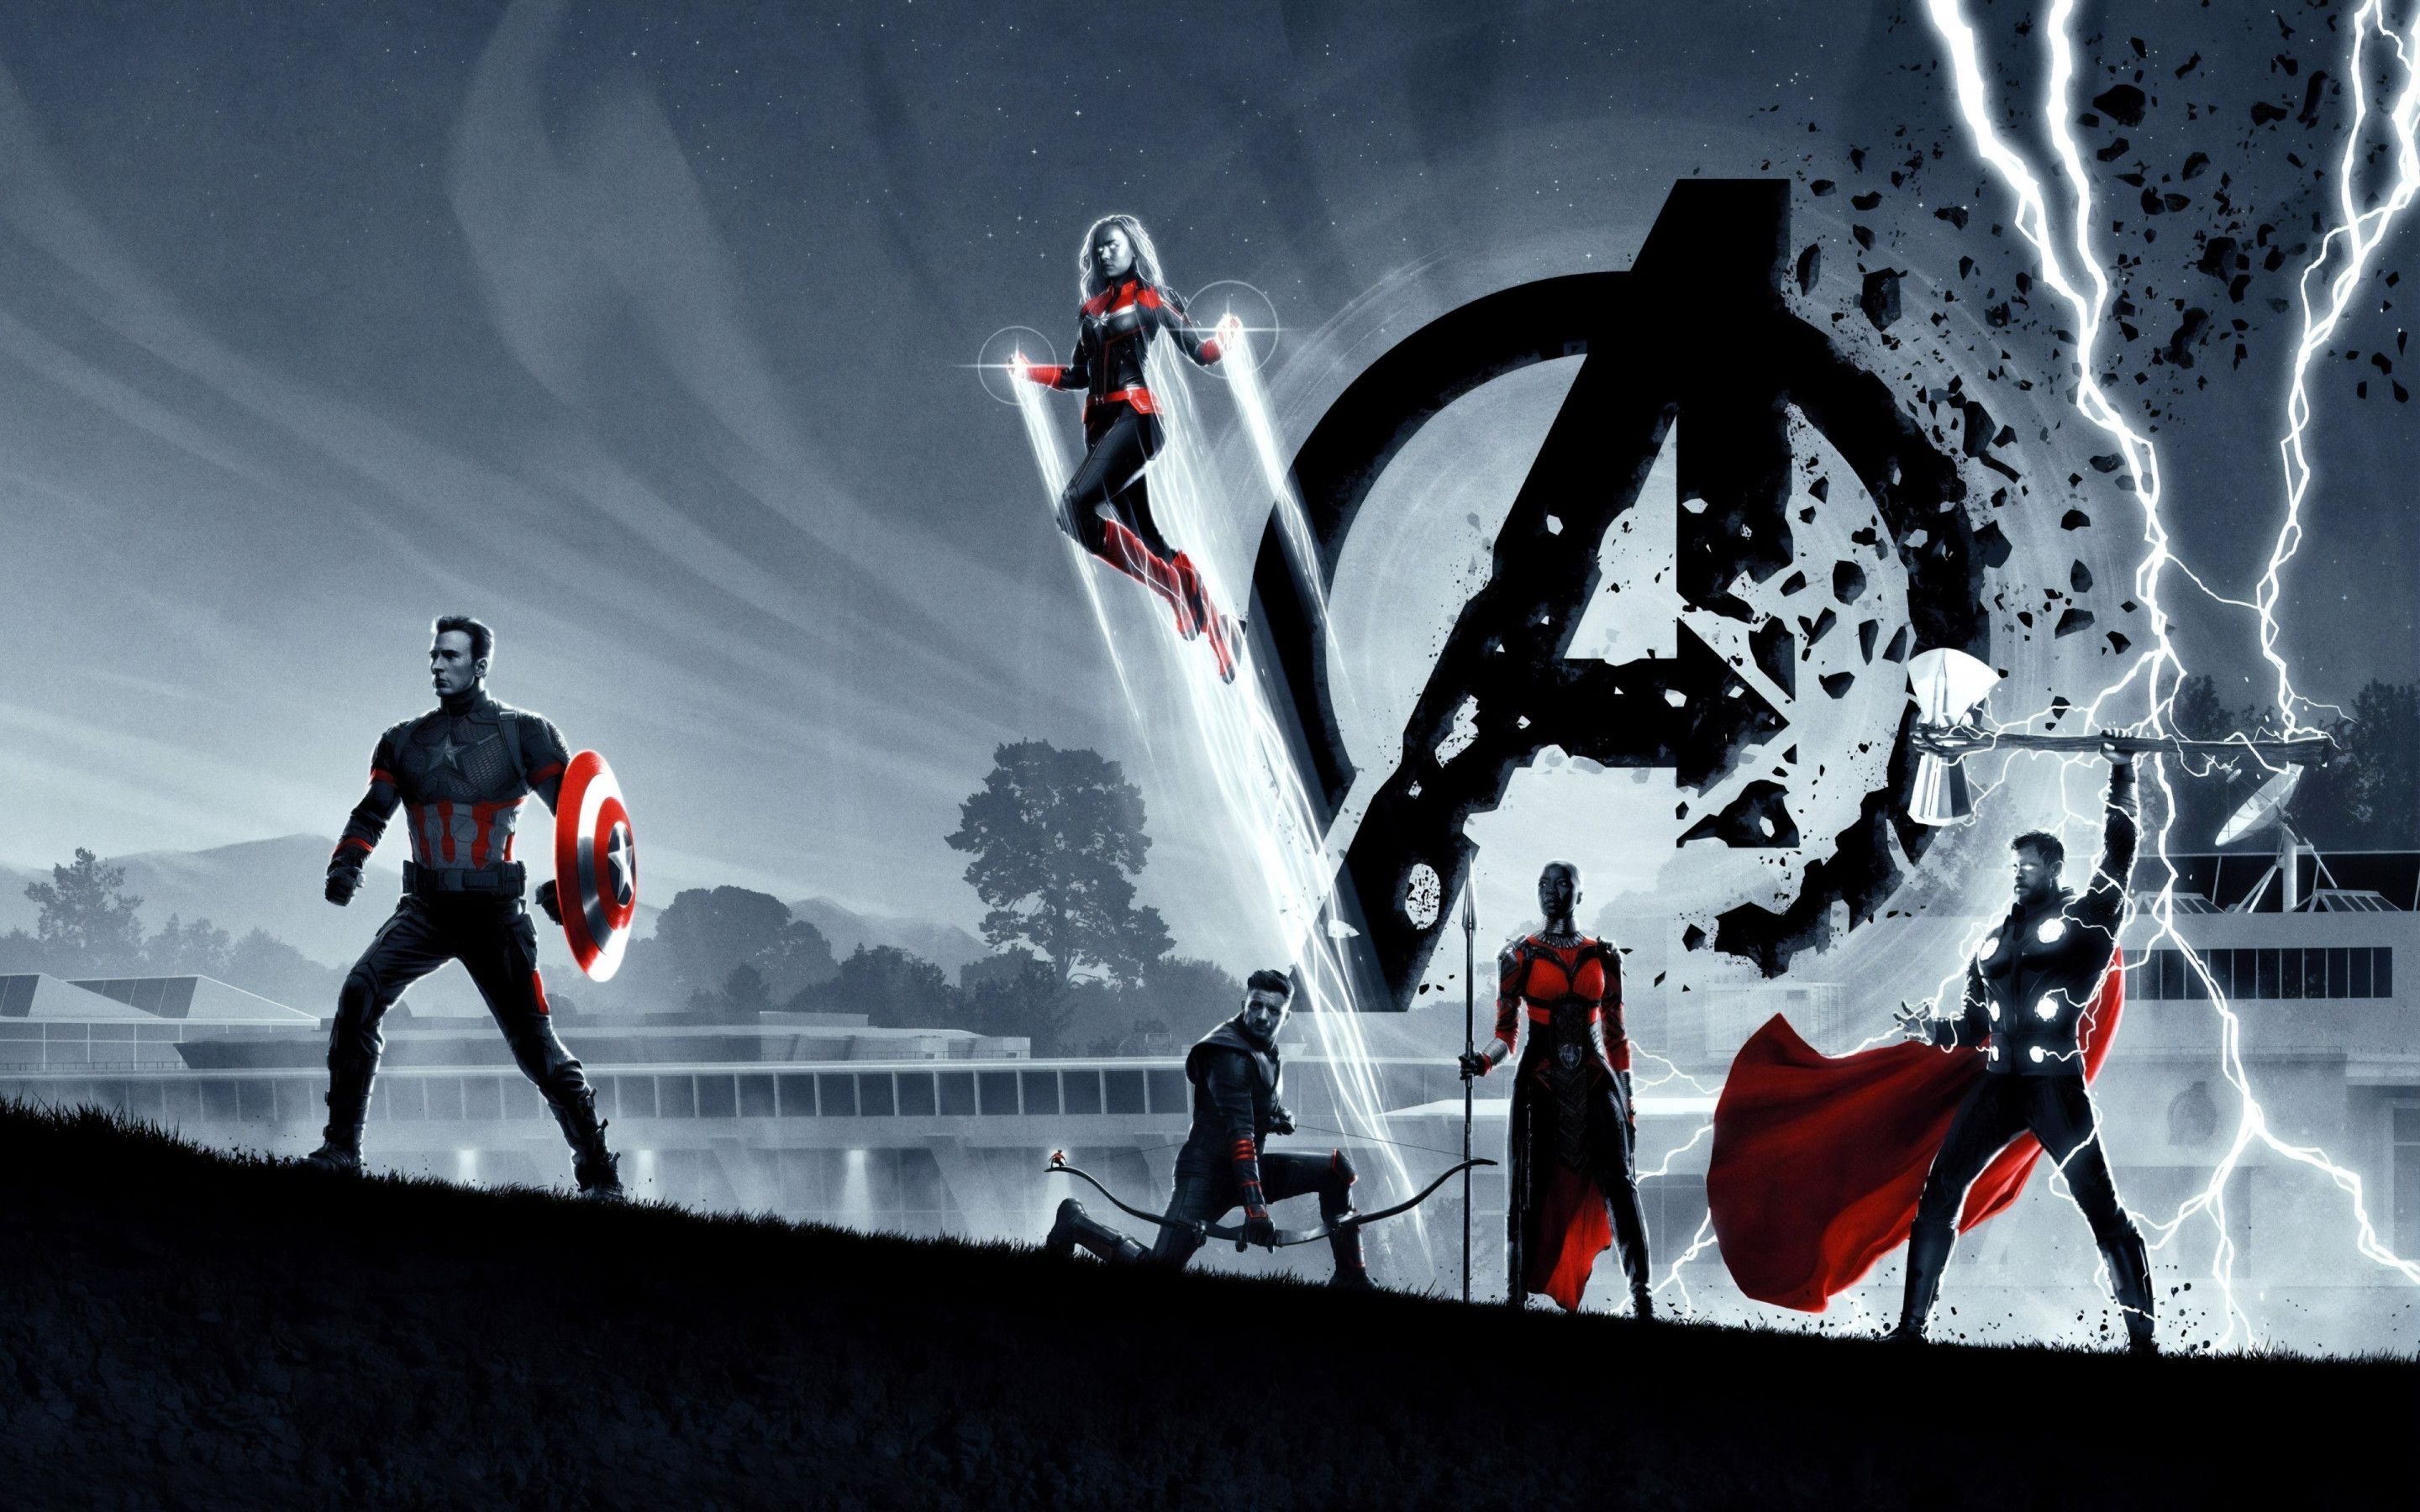 Avengers Endgame Poster 4k Wallpaper